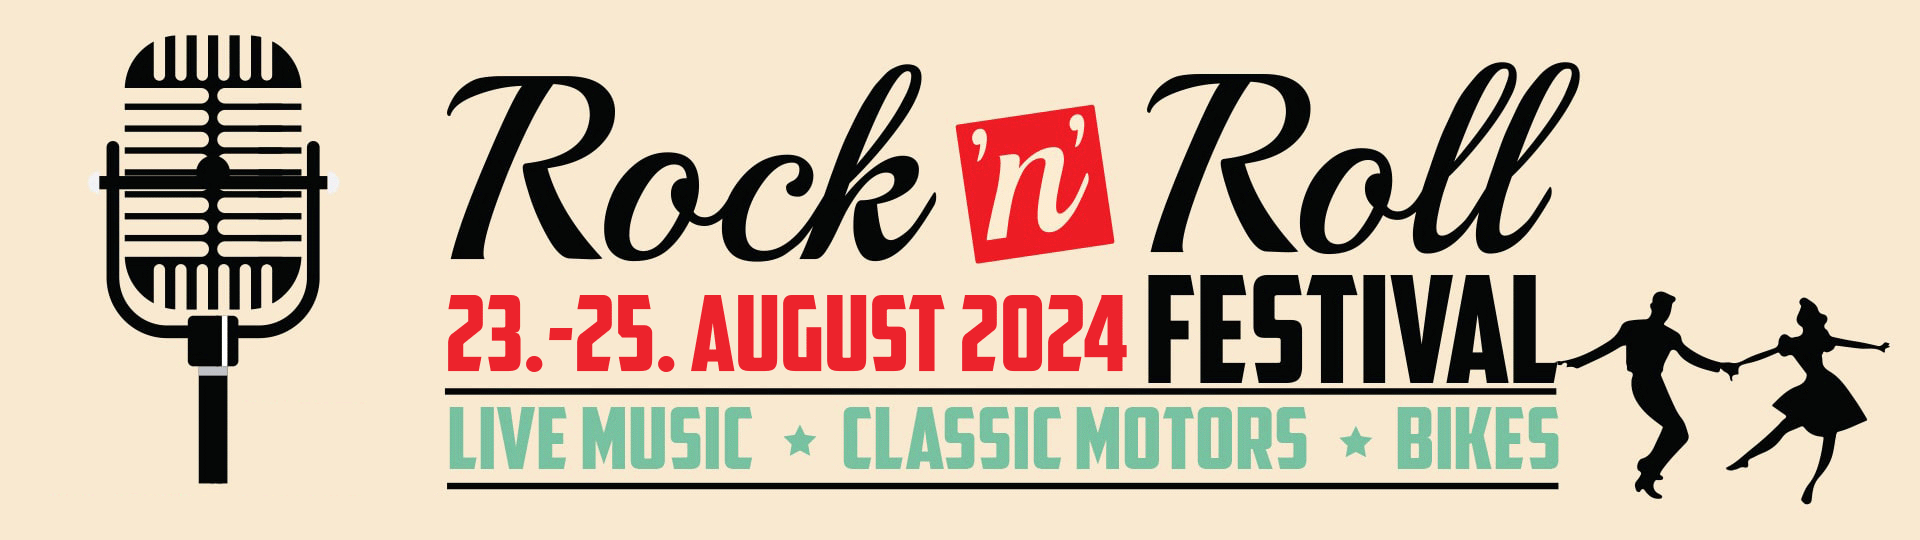 rock n roll festival ganderkesee banner 2024